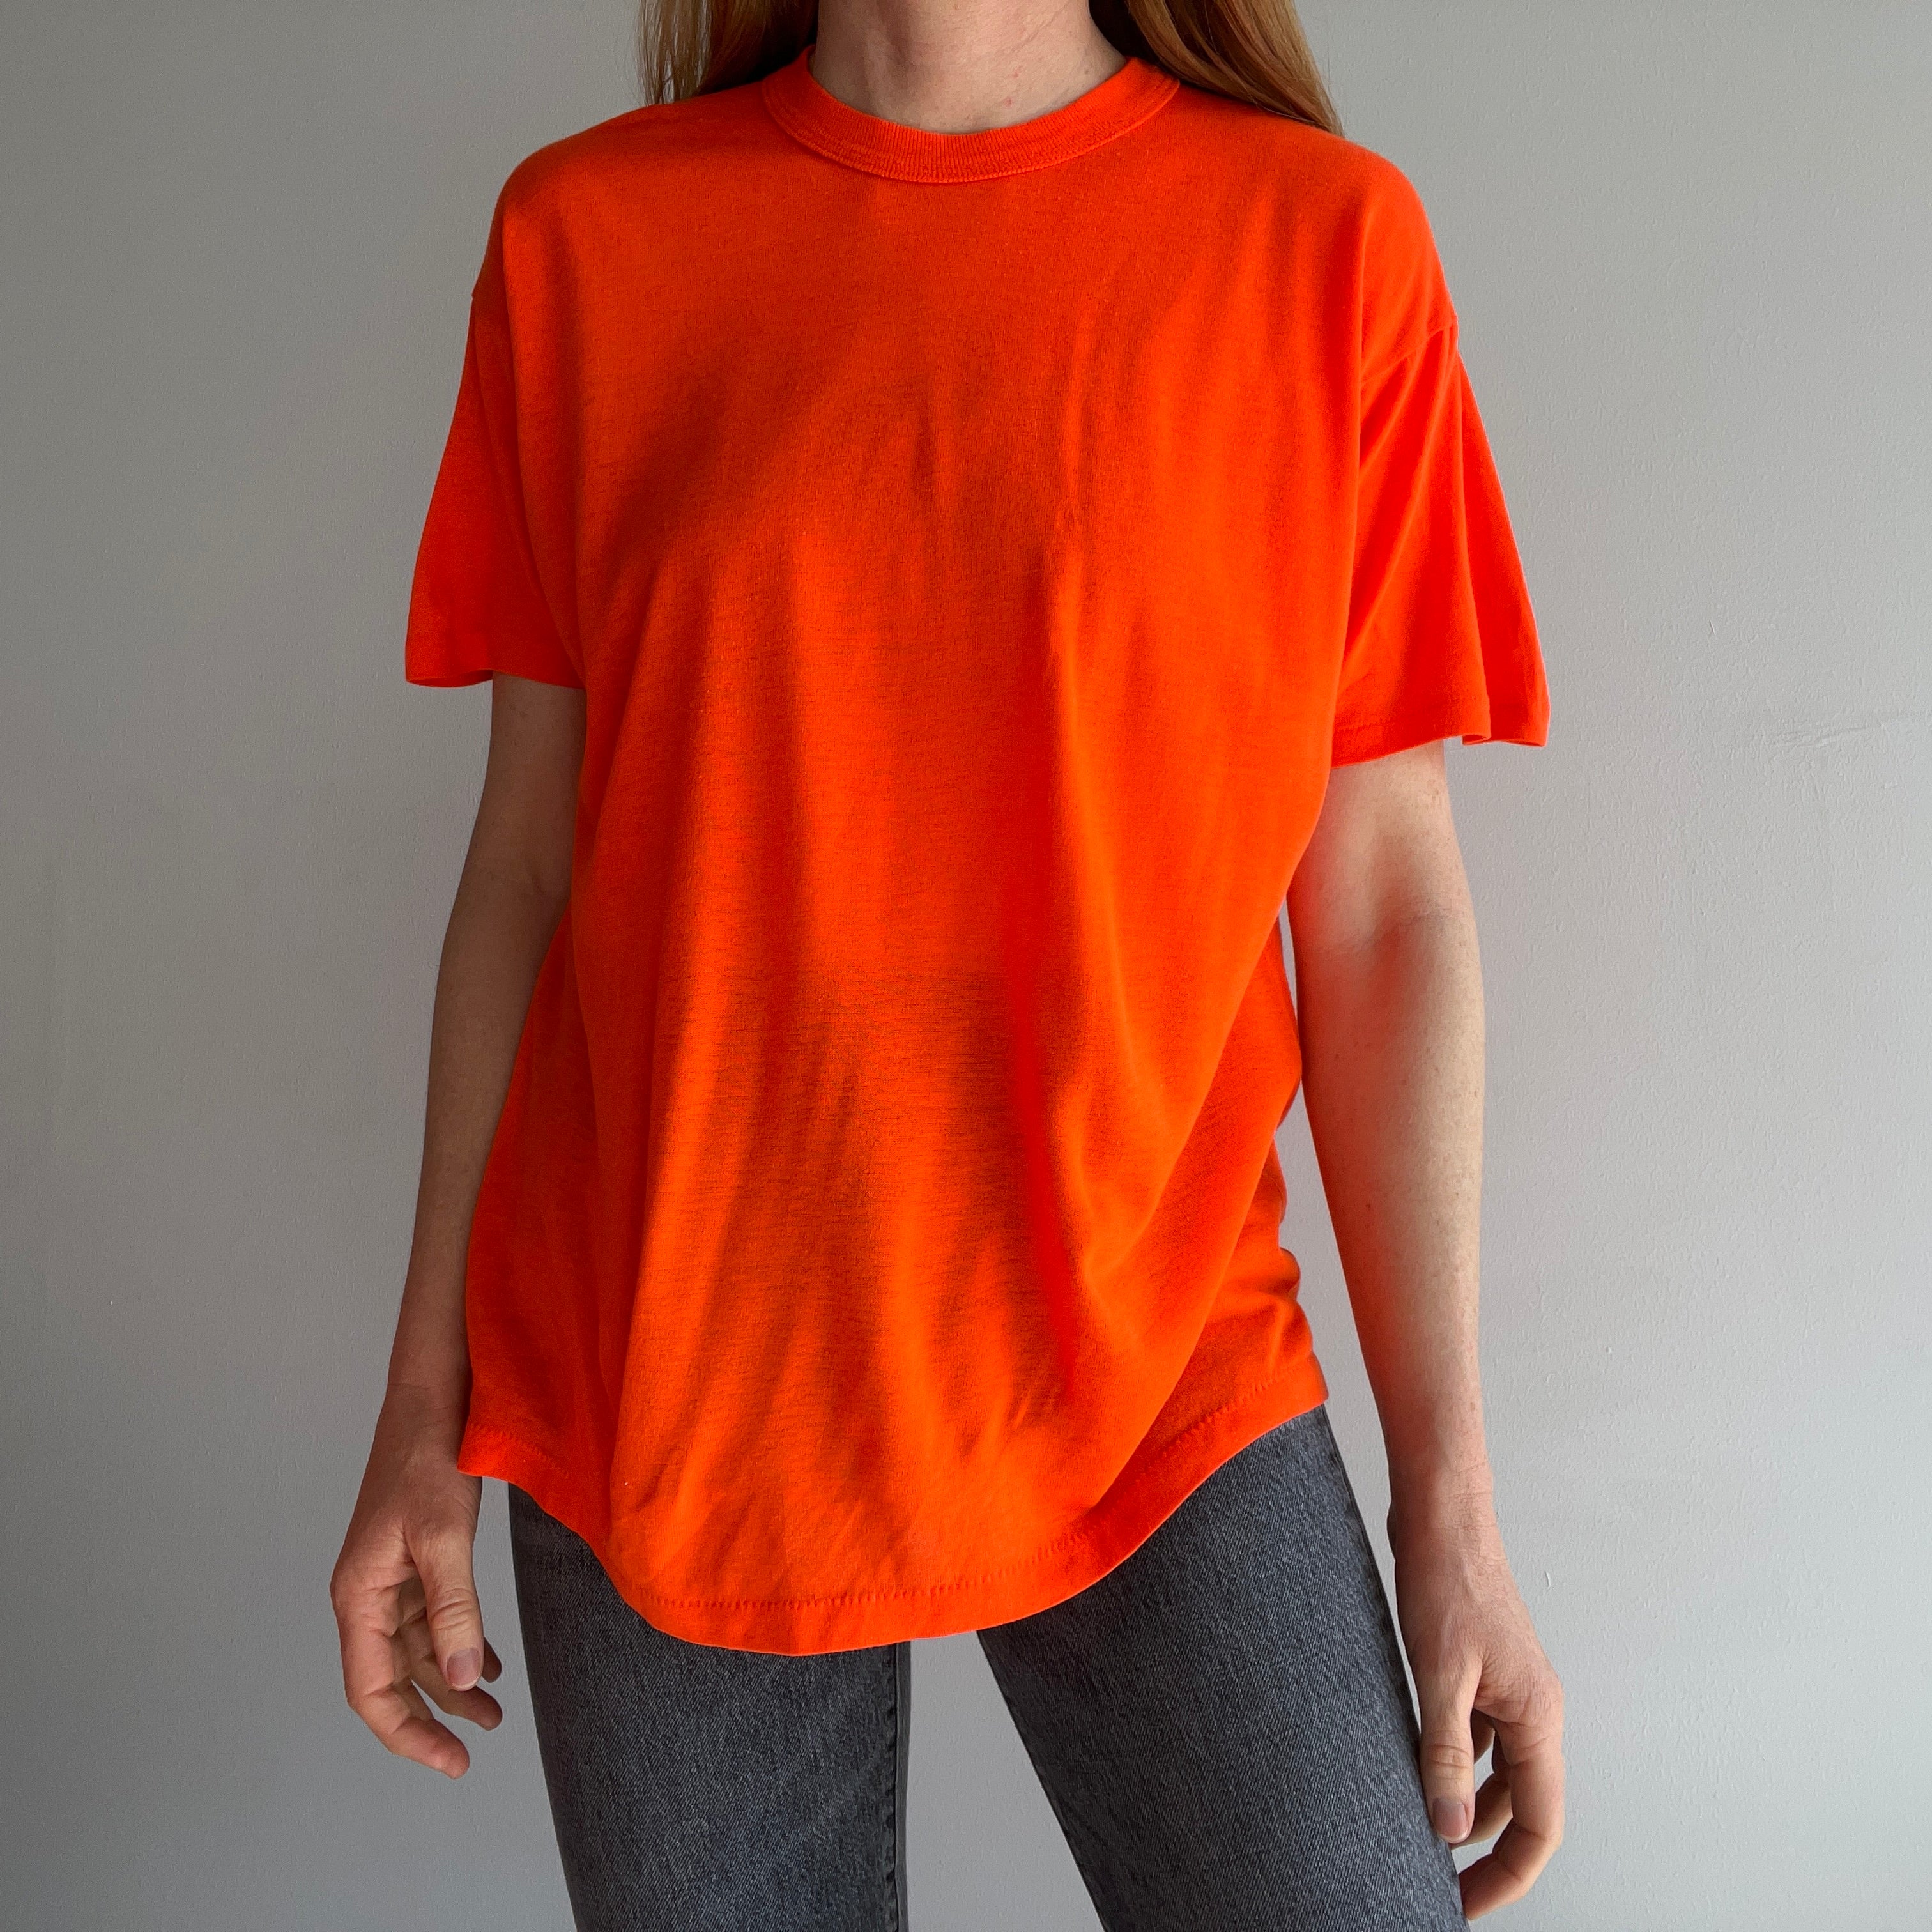 T-shirt orange fluo très doux des années 1980